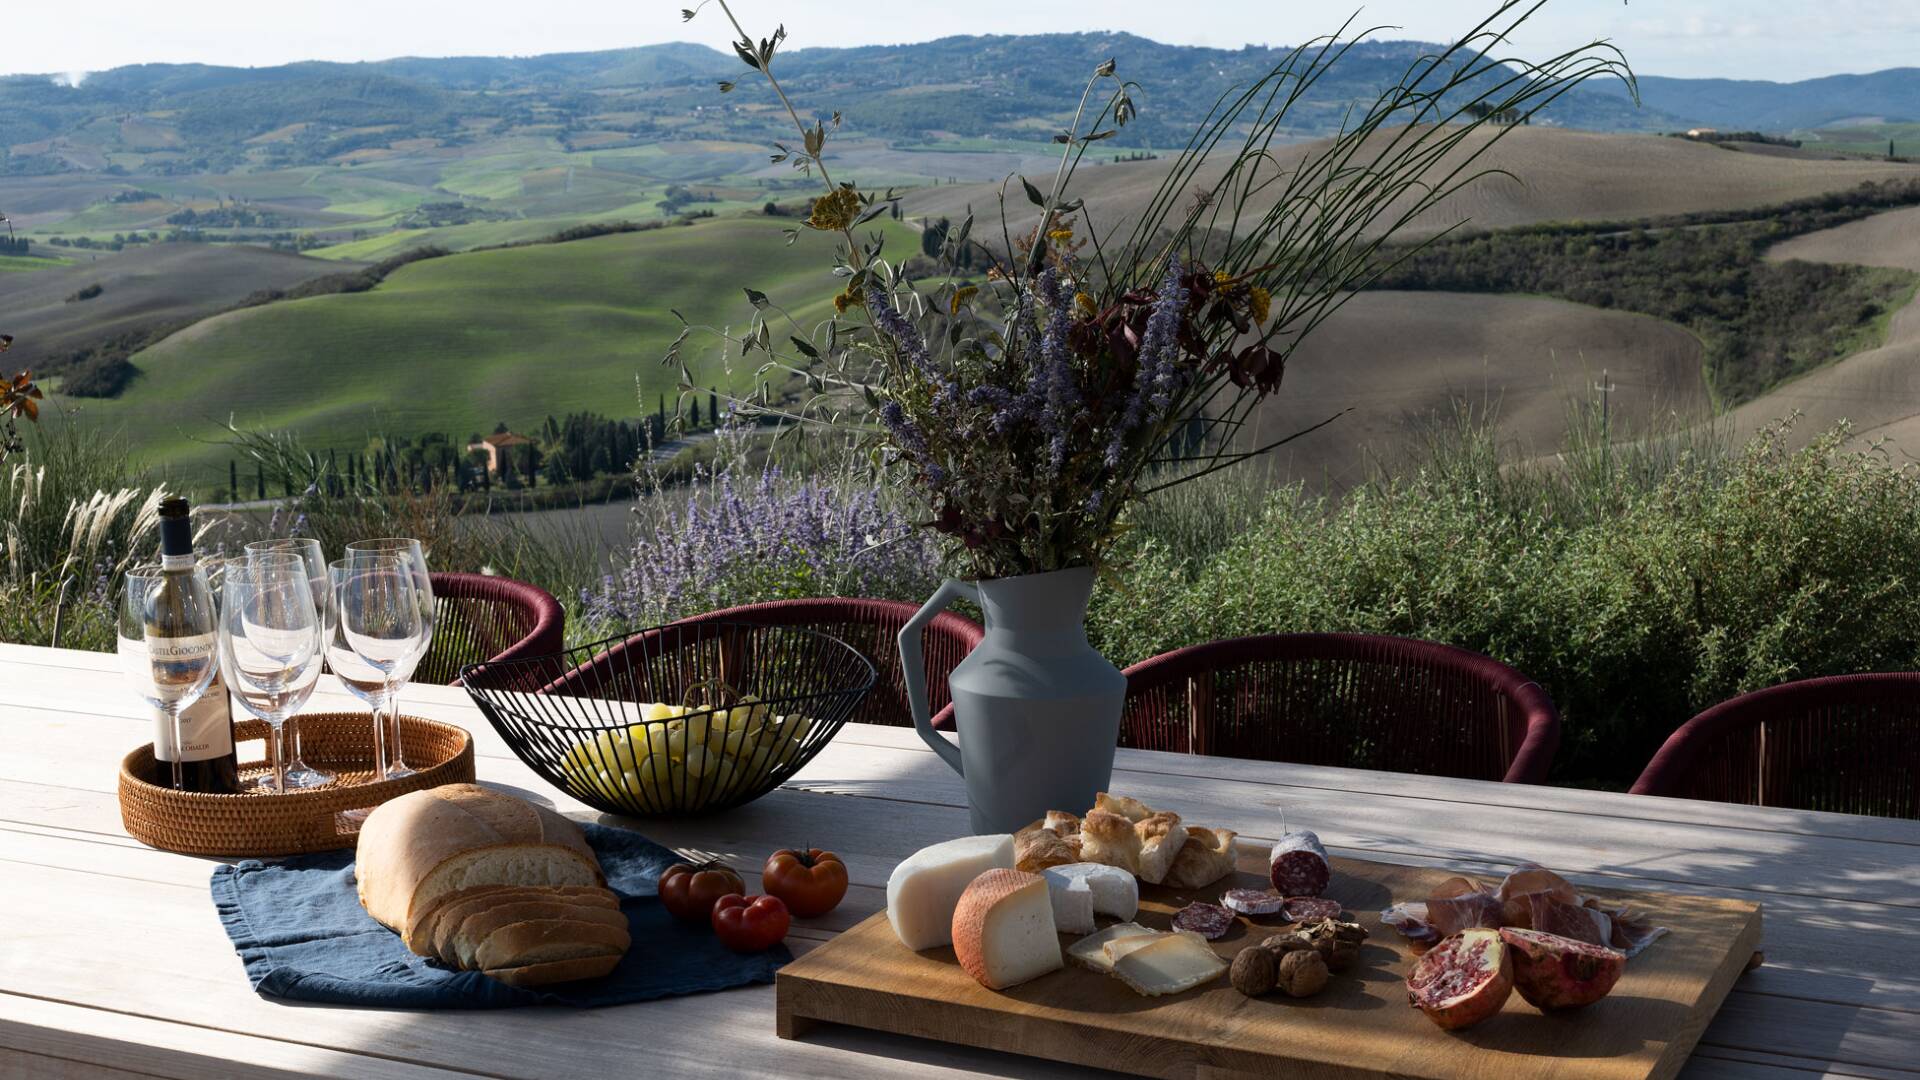 al fresco Tuscan aperitif